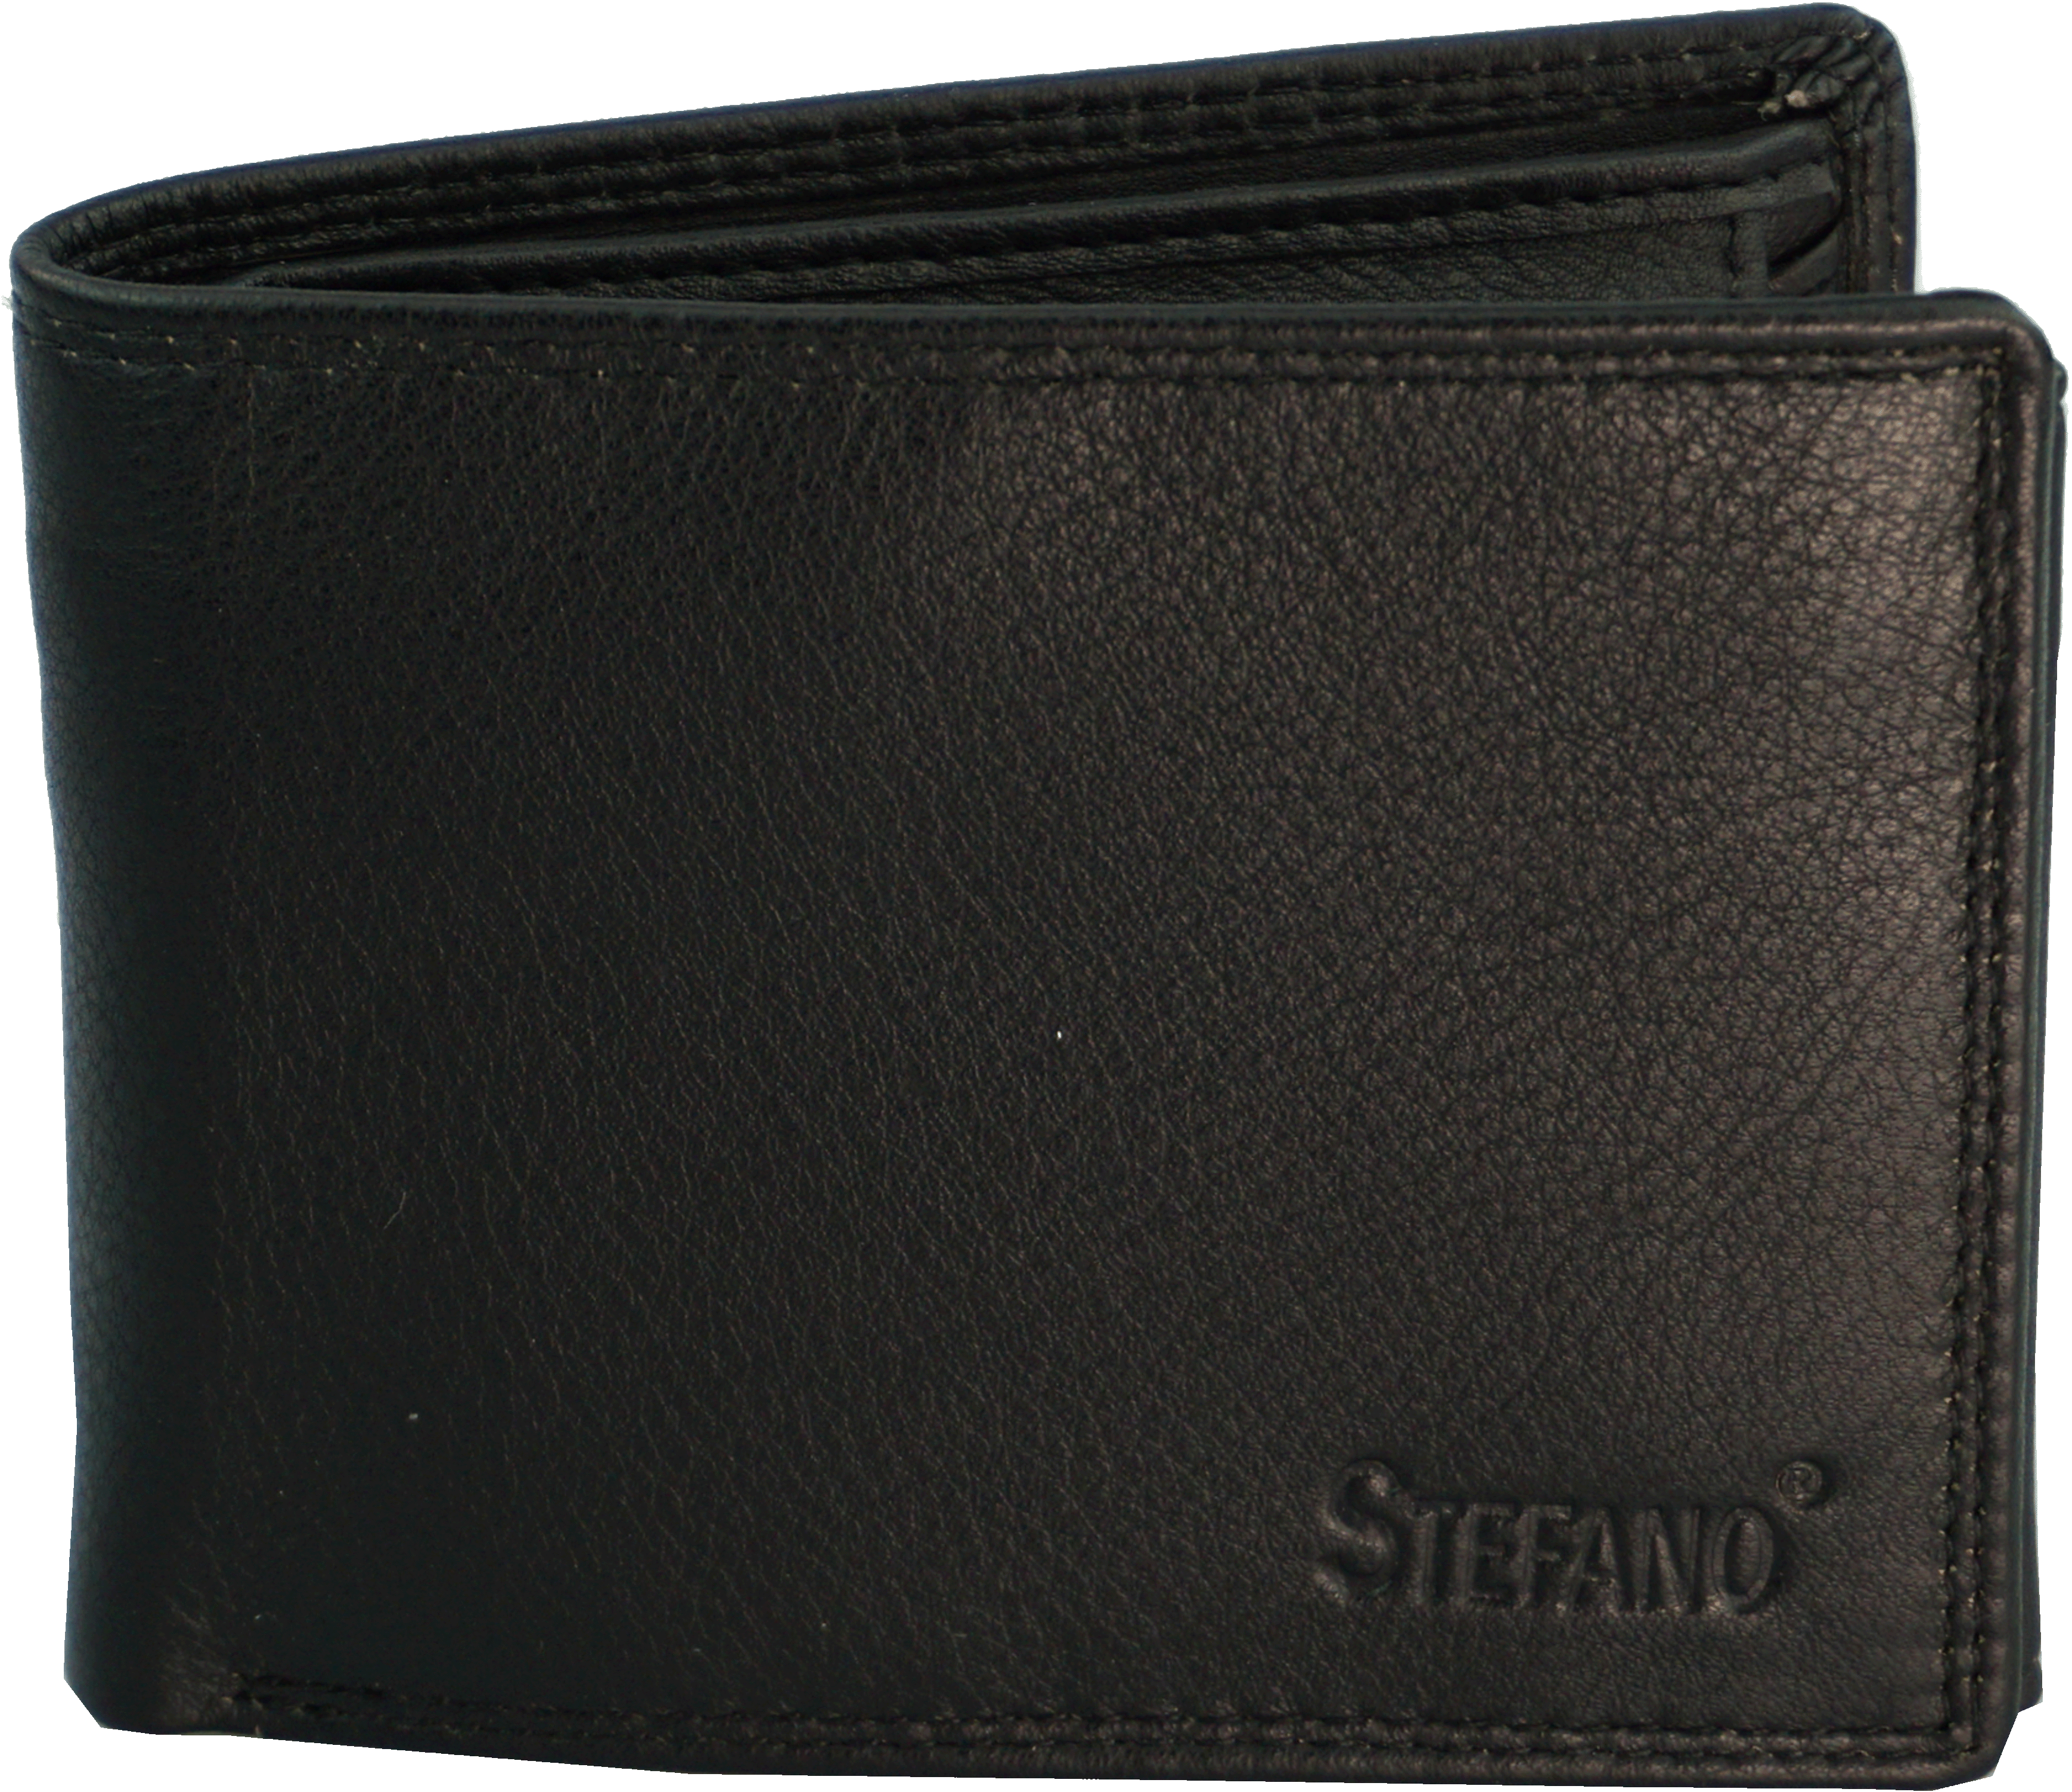 Scheintasche Geldbörse Rindleder RFID in schwarz - K-102-60